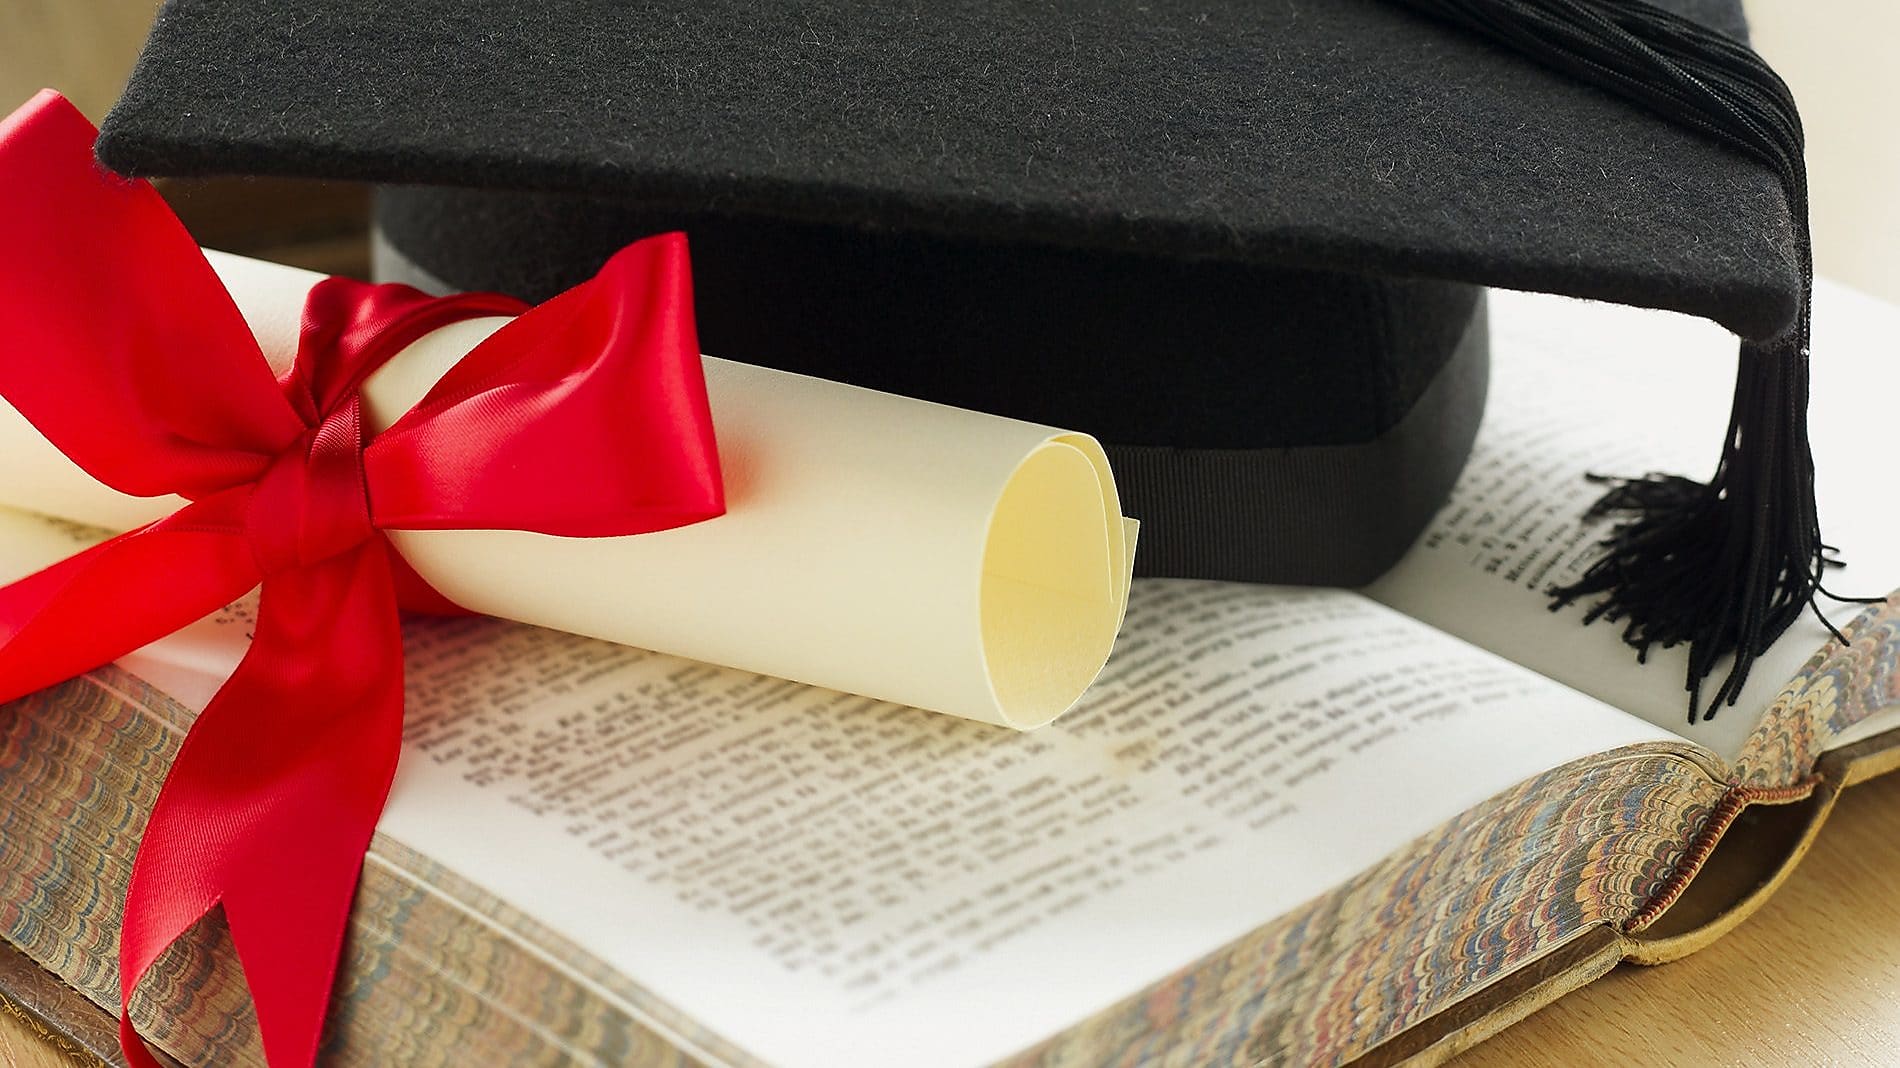 graduation-scroll-and-mortar-cap